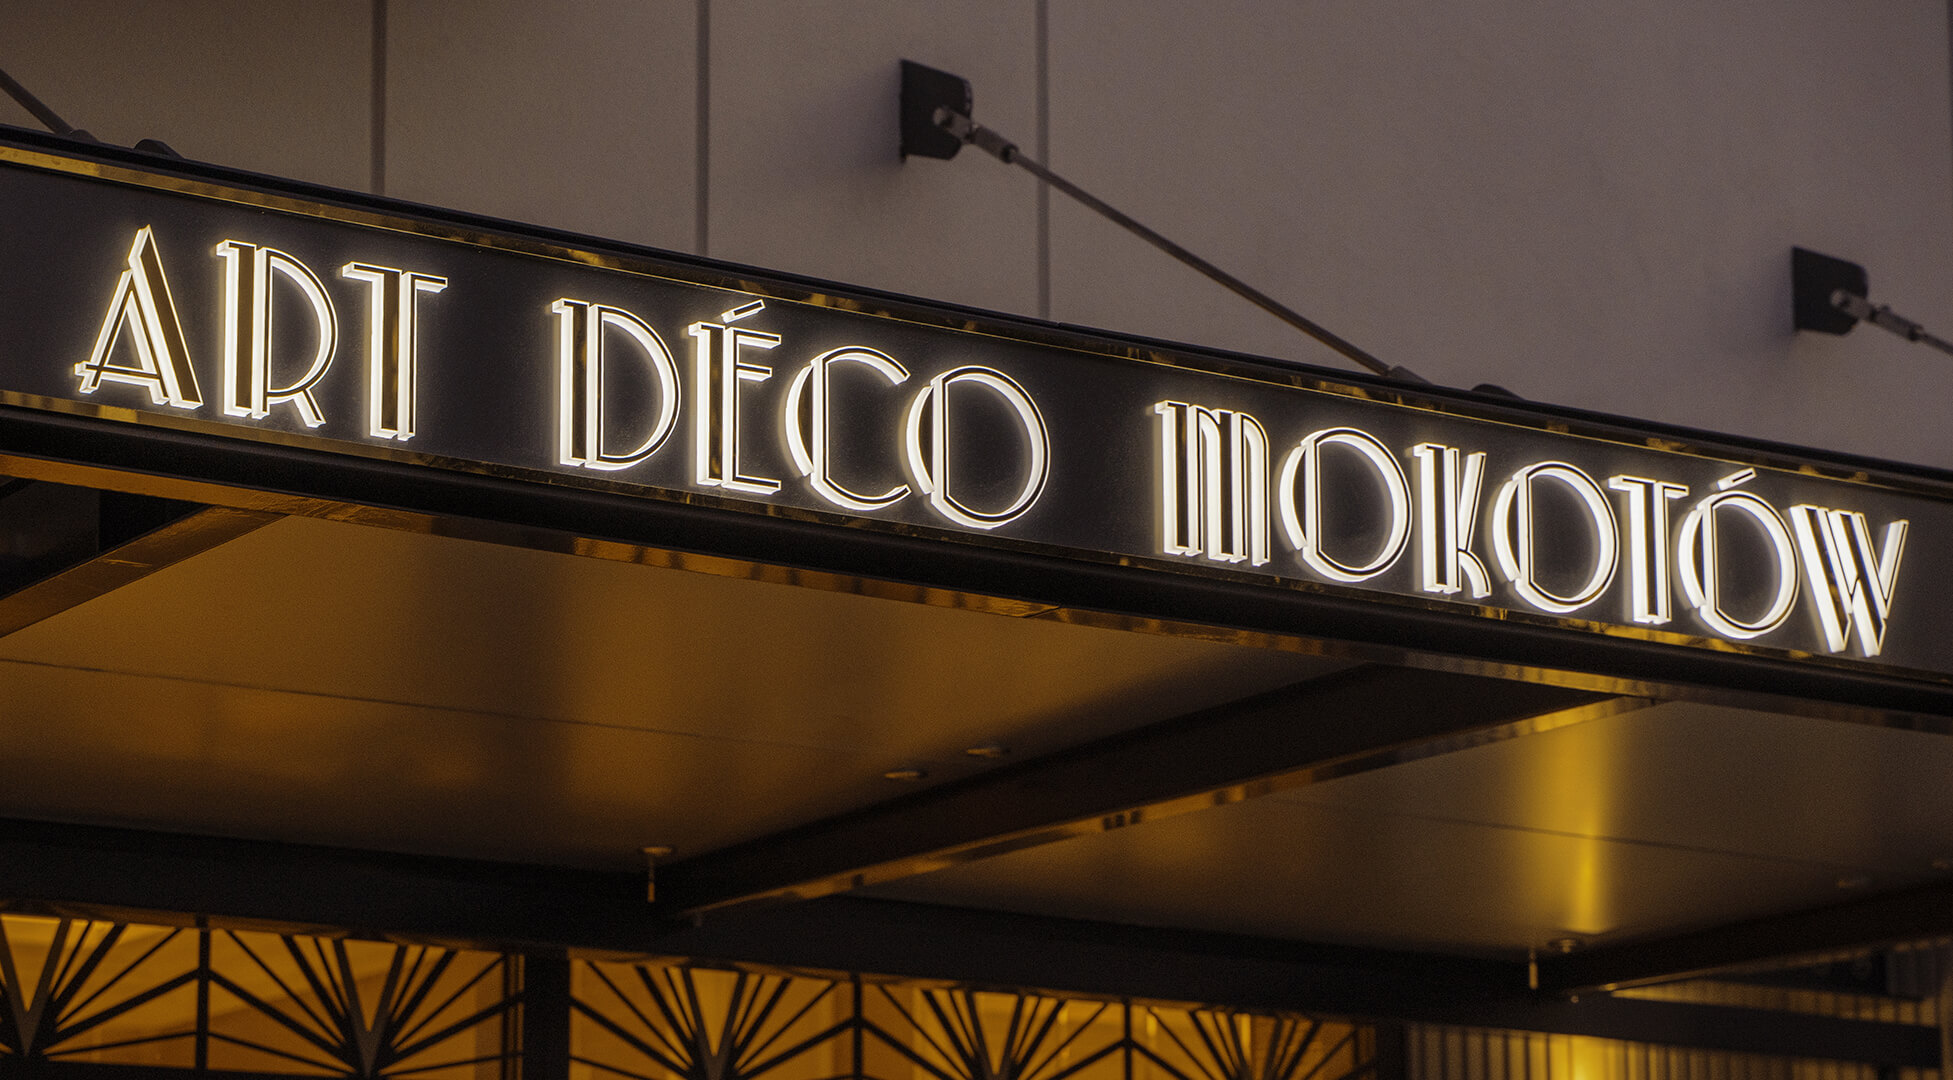 Art Deco Mokotow - Cassone in dibond color oro sopra l'ingresso Art Deco di Mokotow, retroilluminato a LED.